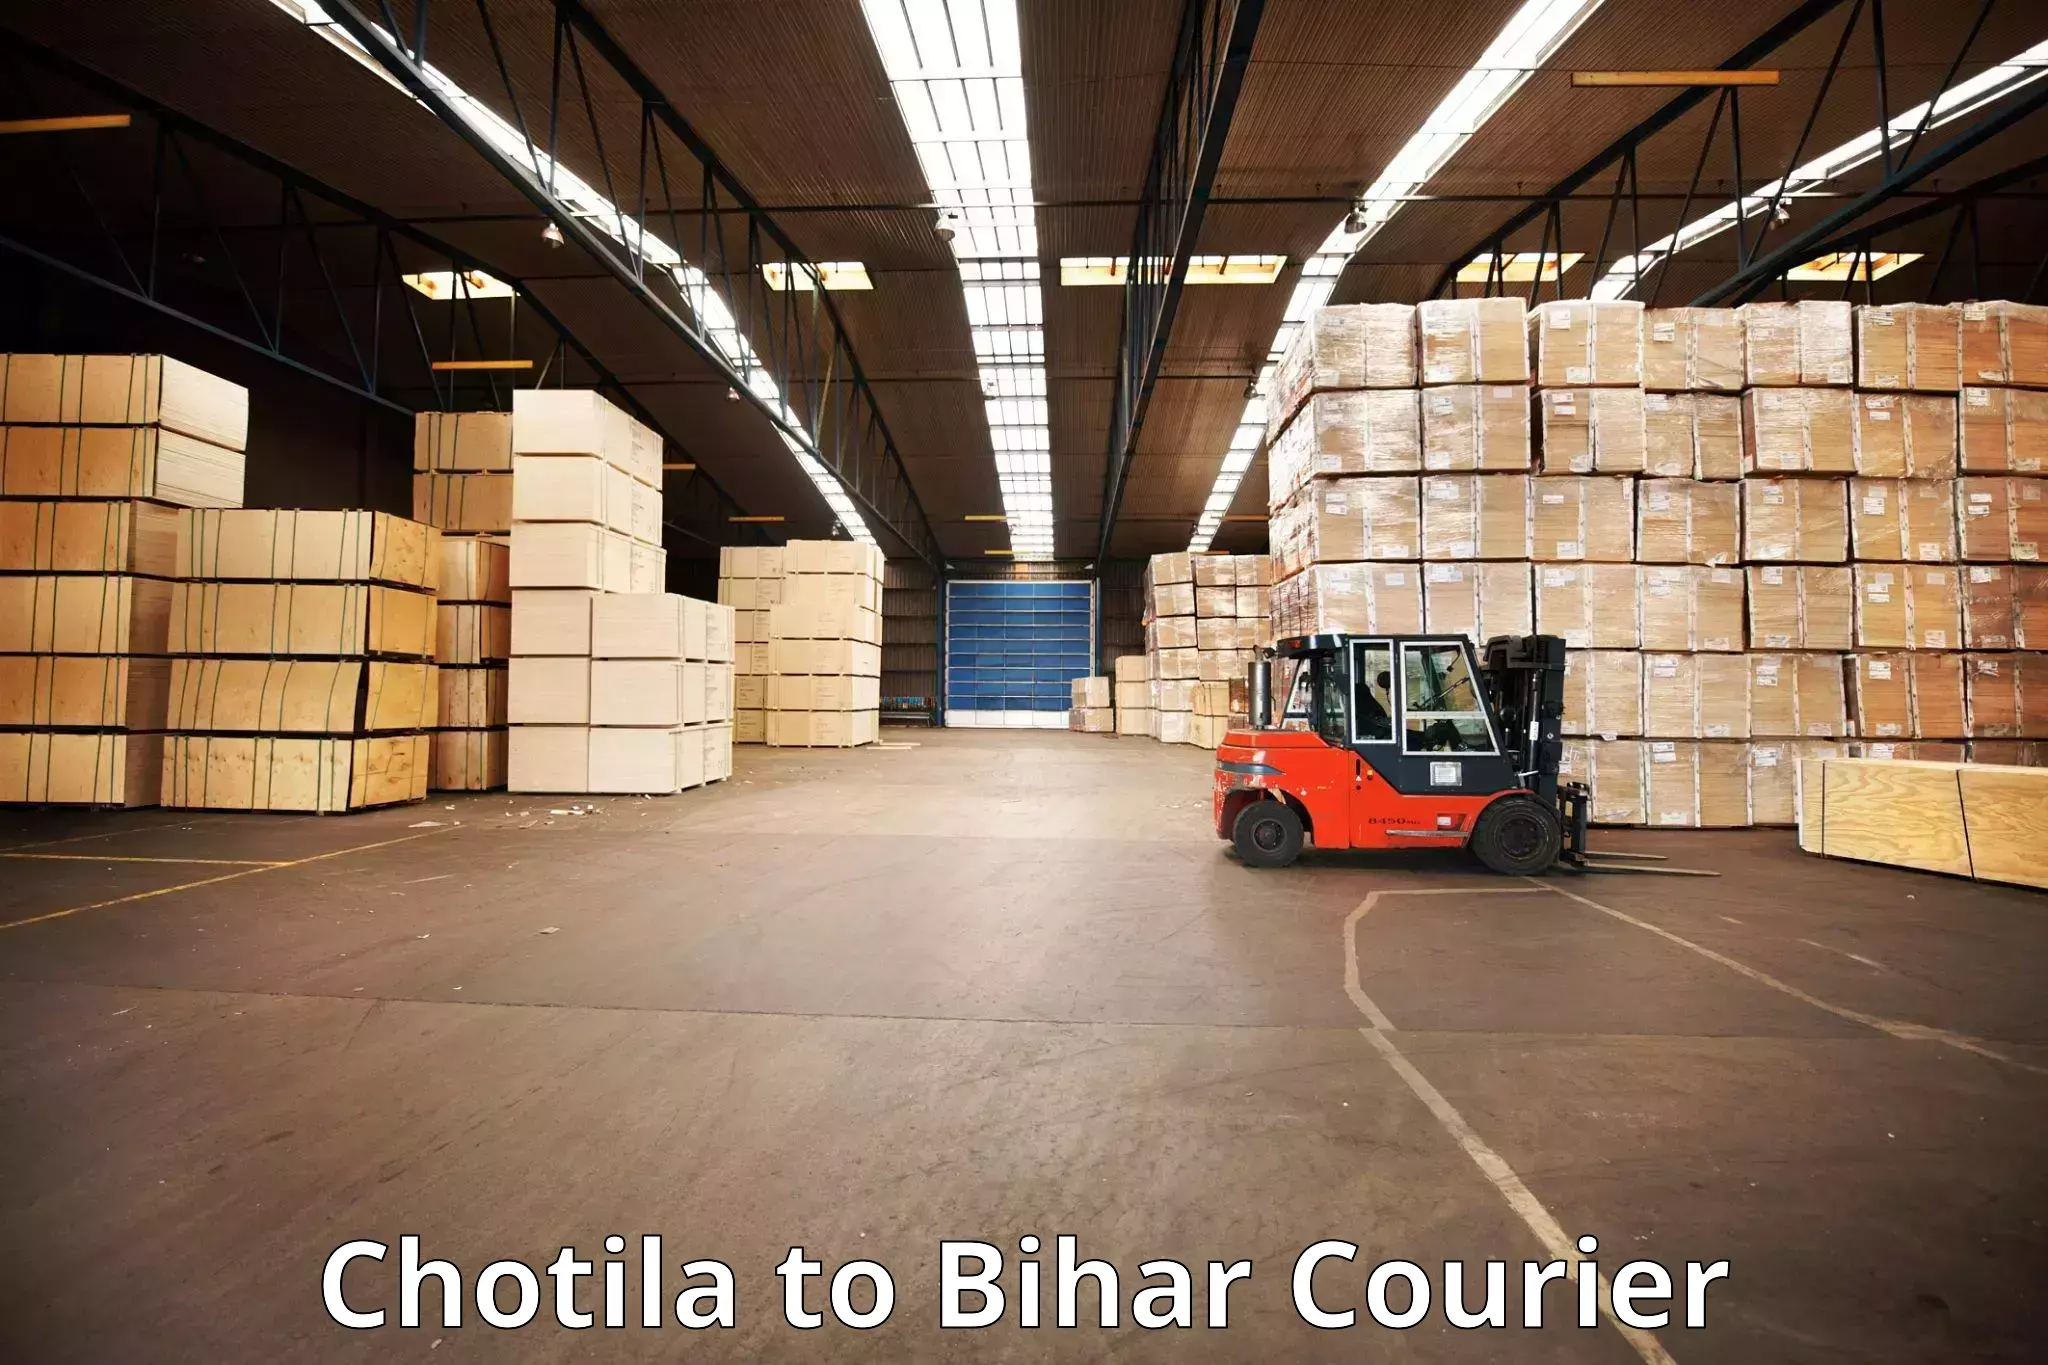 Luggage transport service Chotila to Maheshkhunt